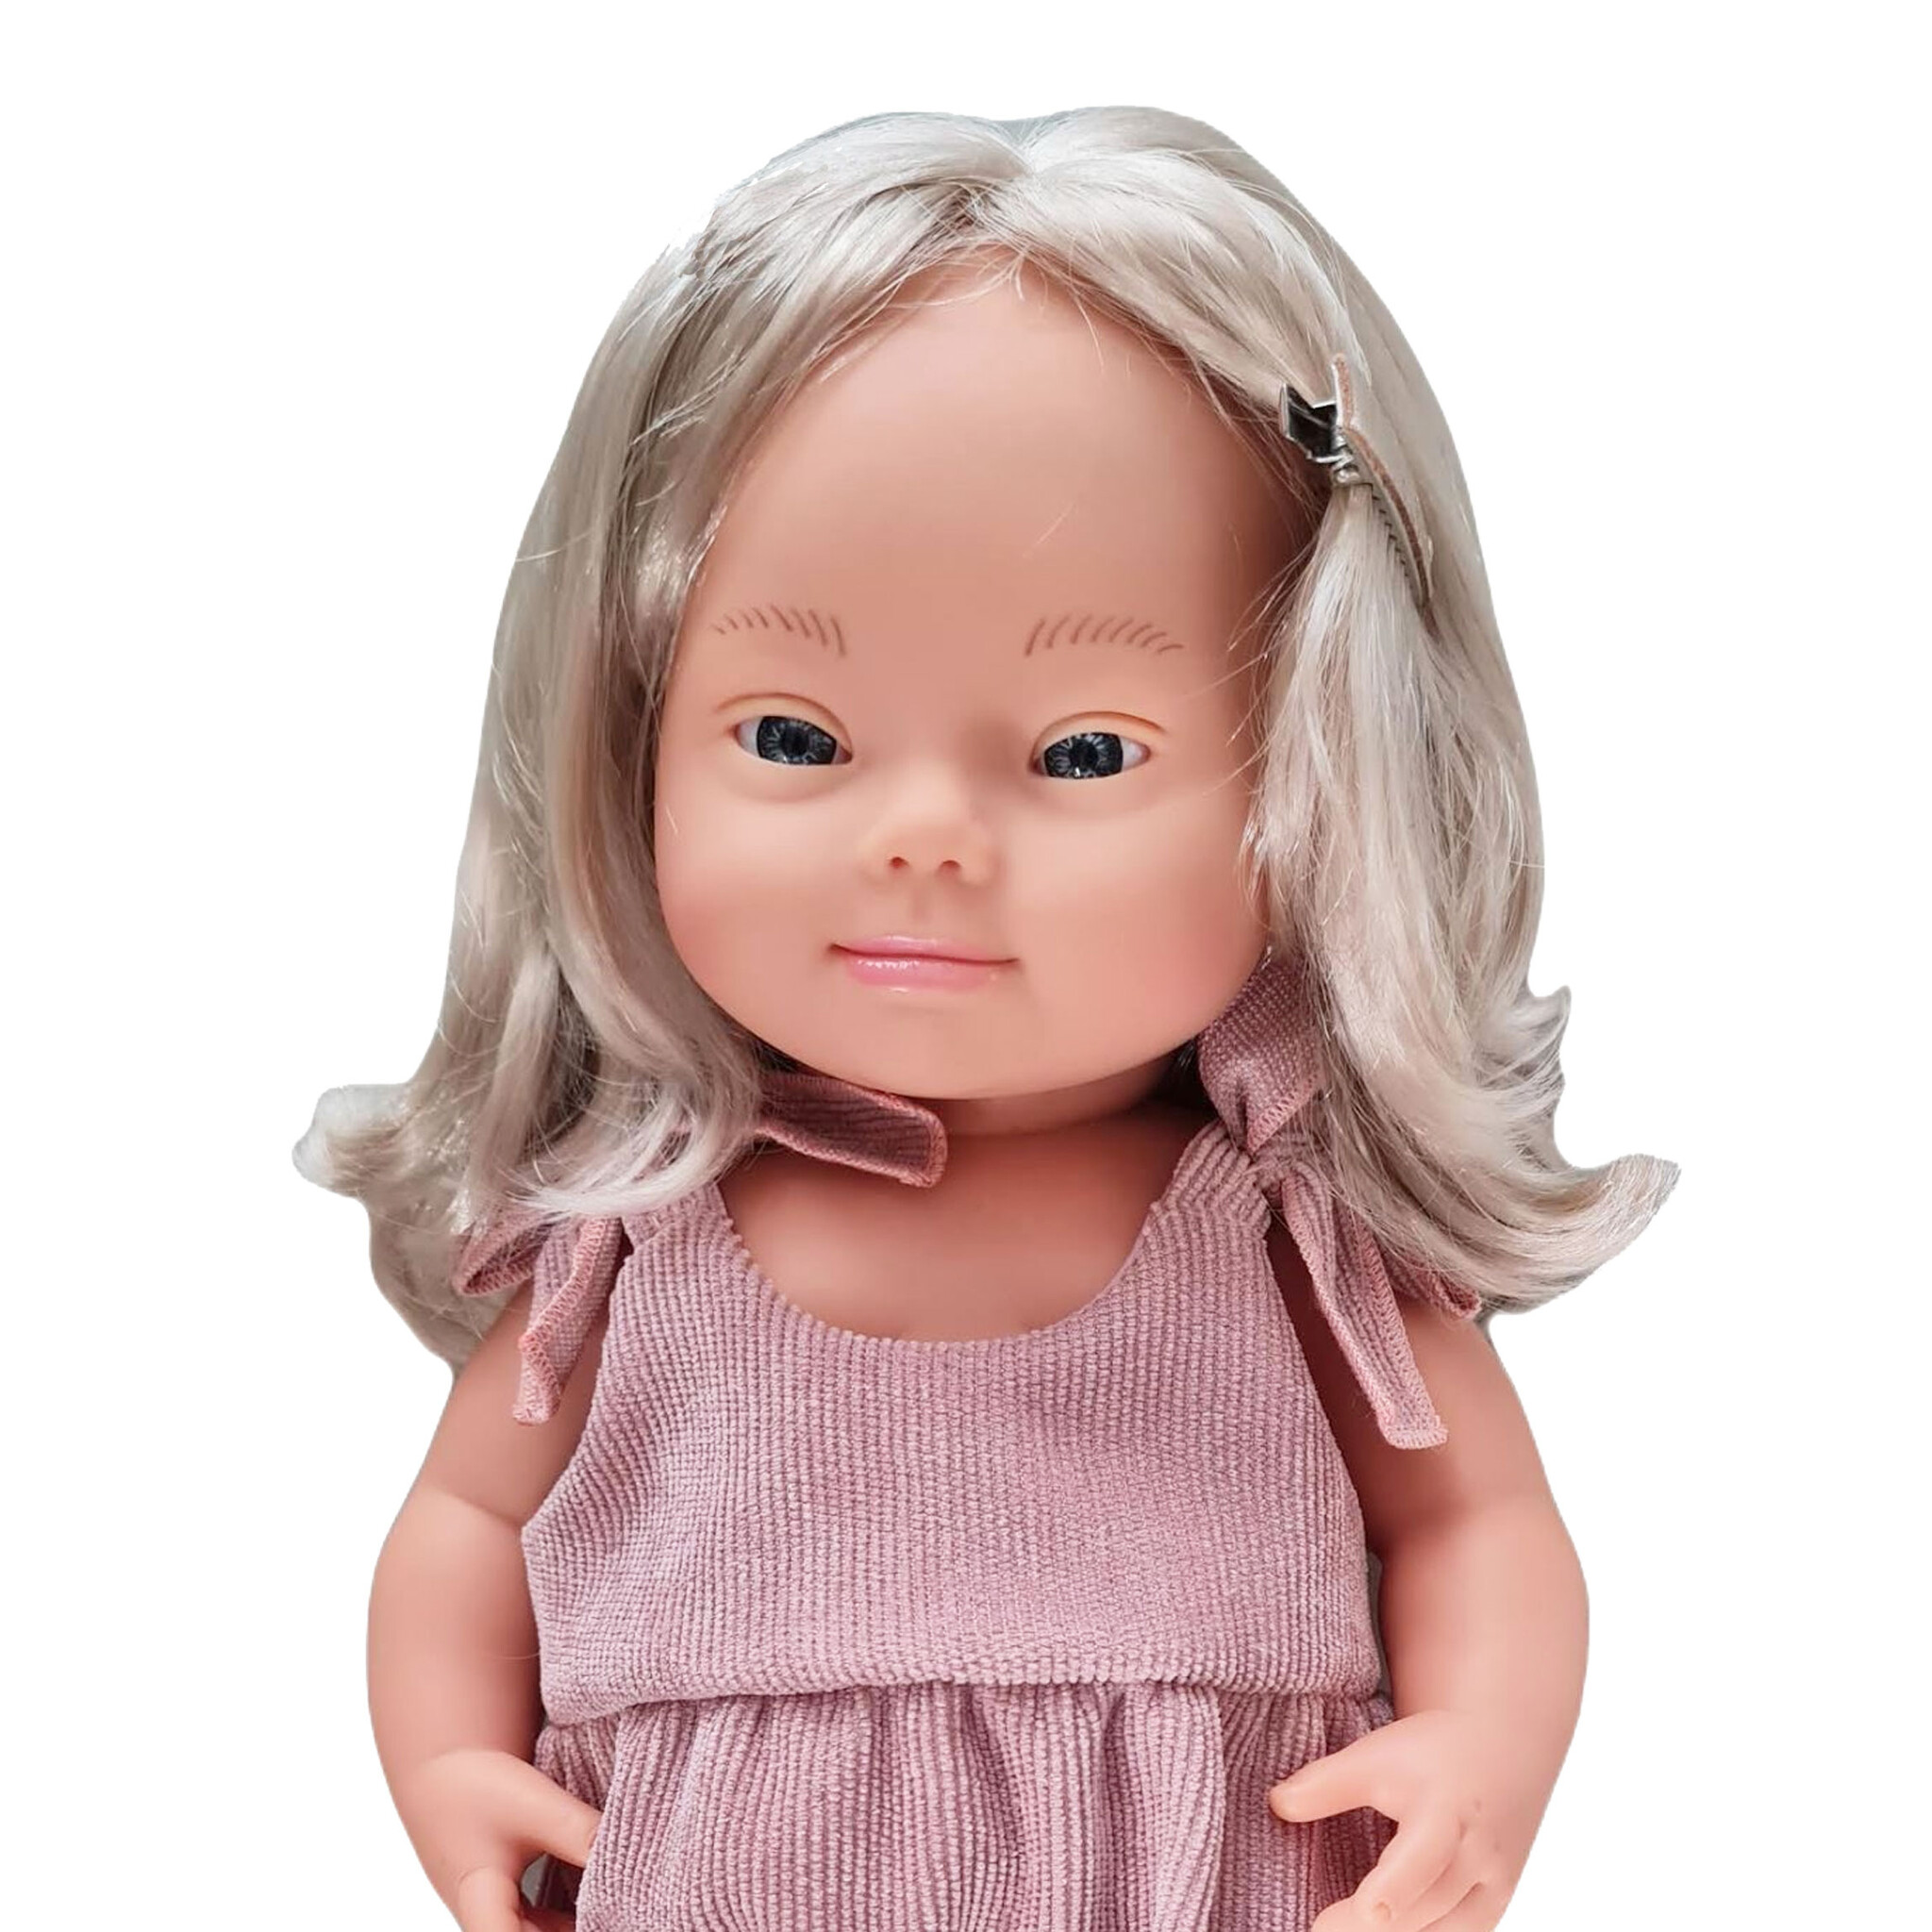 Miniland poppen Miniland-Puppe Europäisches Mädchen mit Down-Syndrom 38 cm